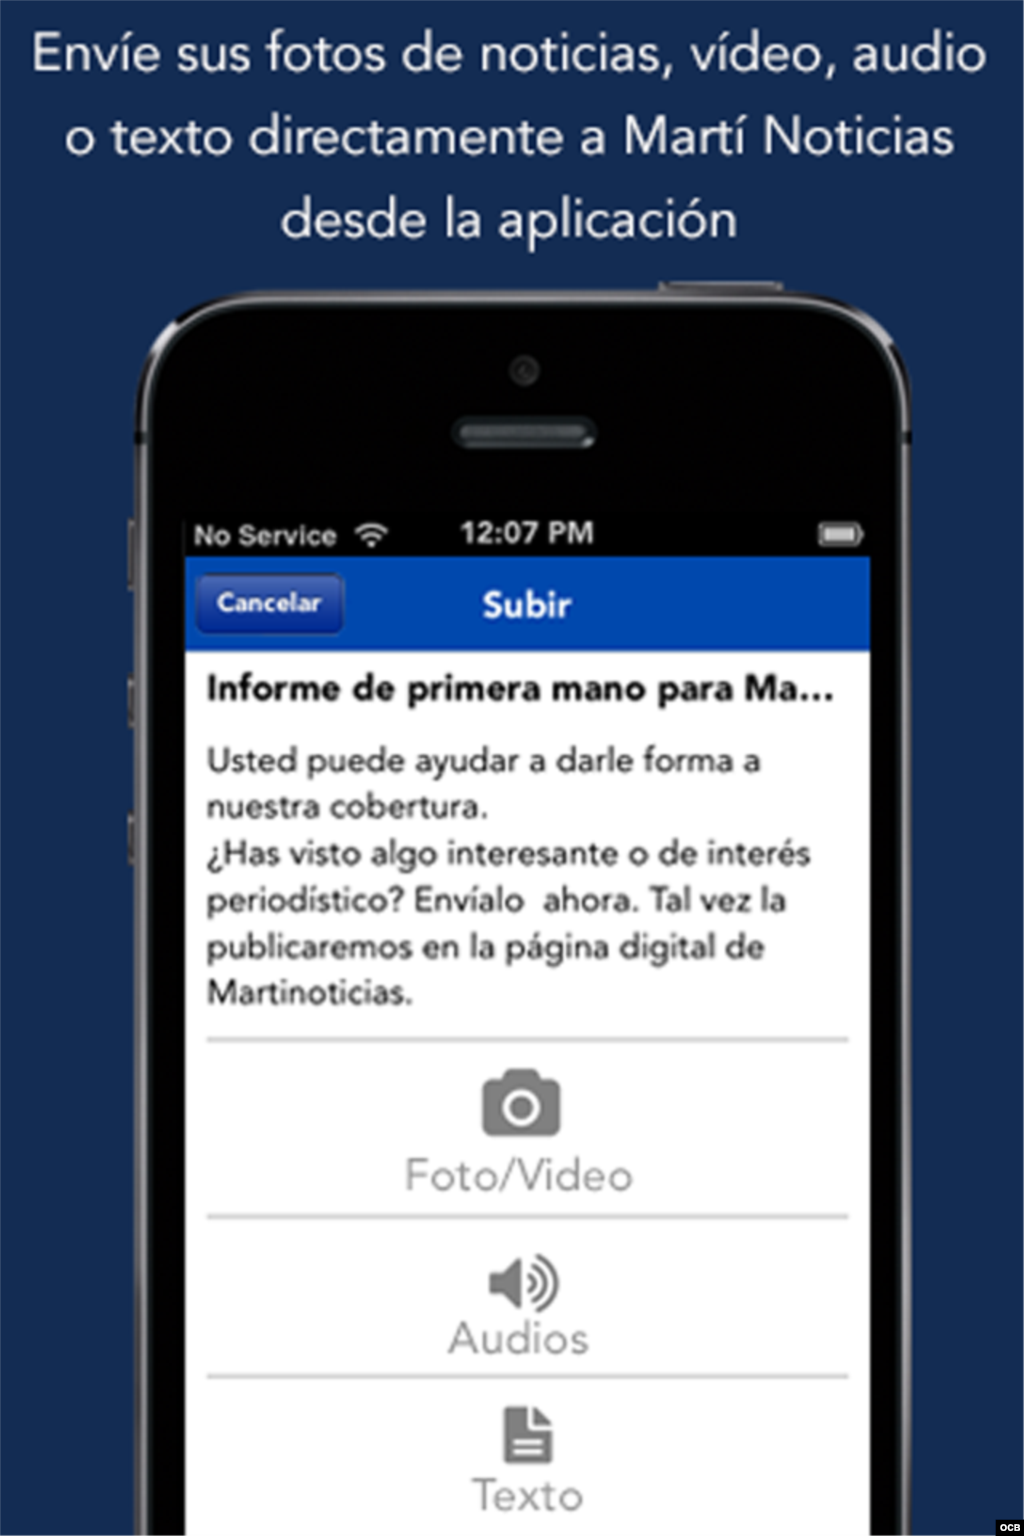 Puede enviar su video, audio o texto directamente a Martí Noticias desde la aplicación 